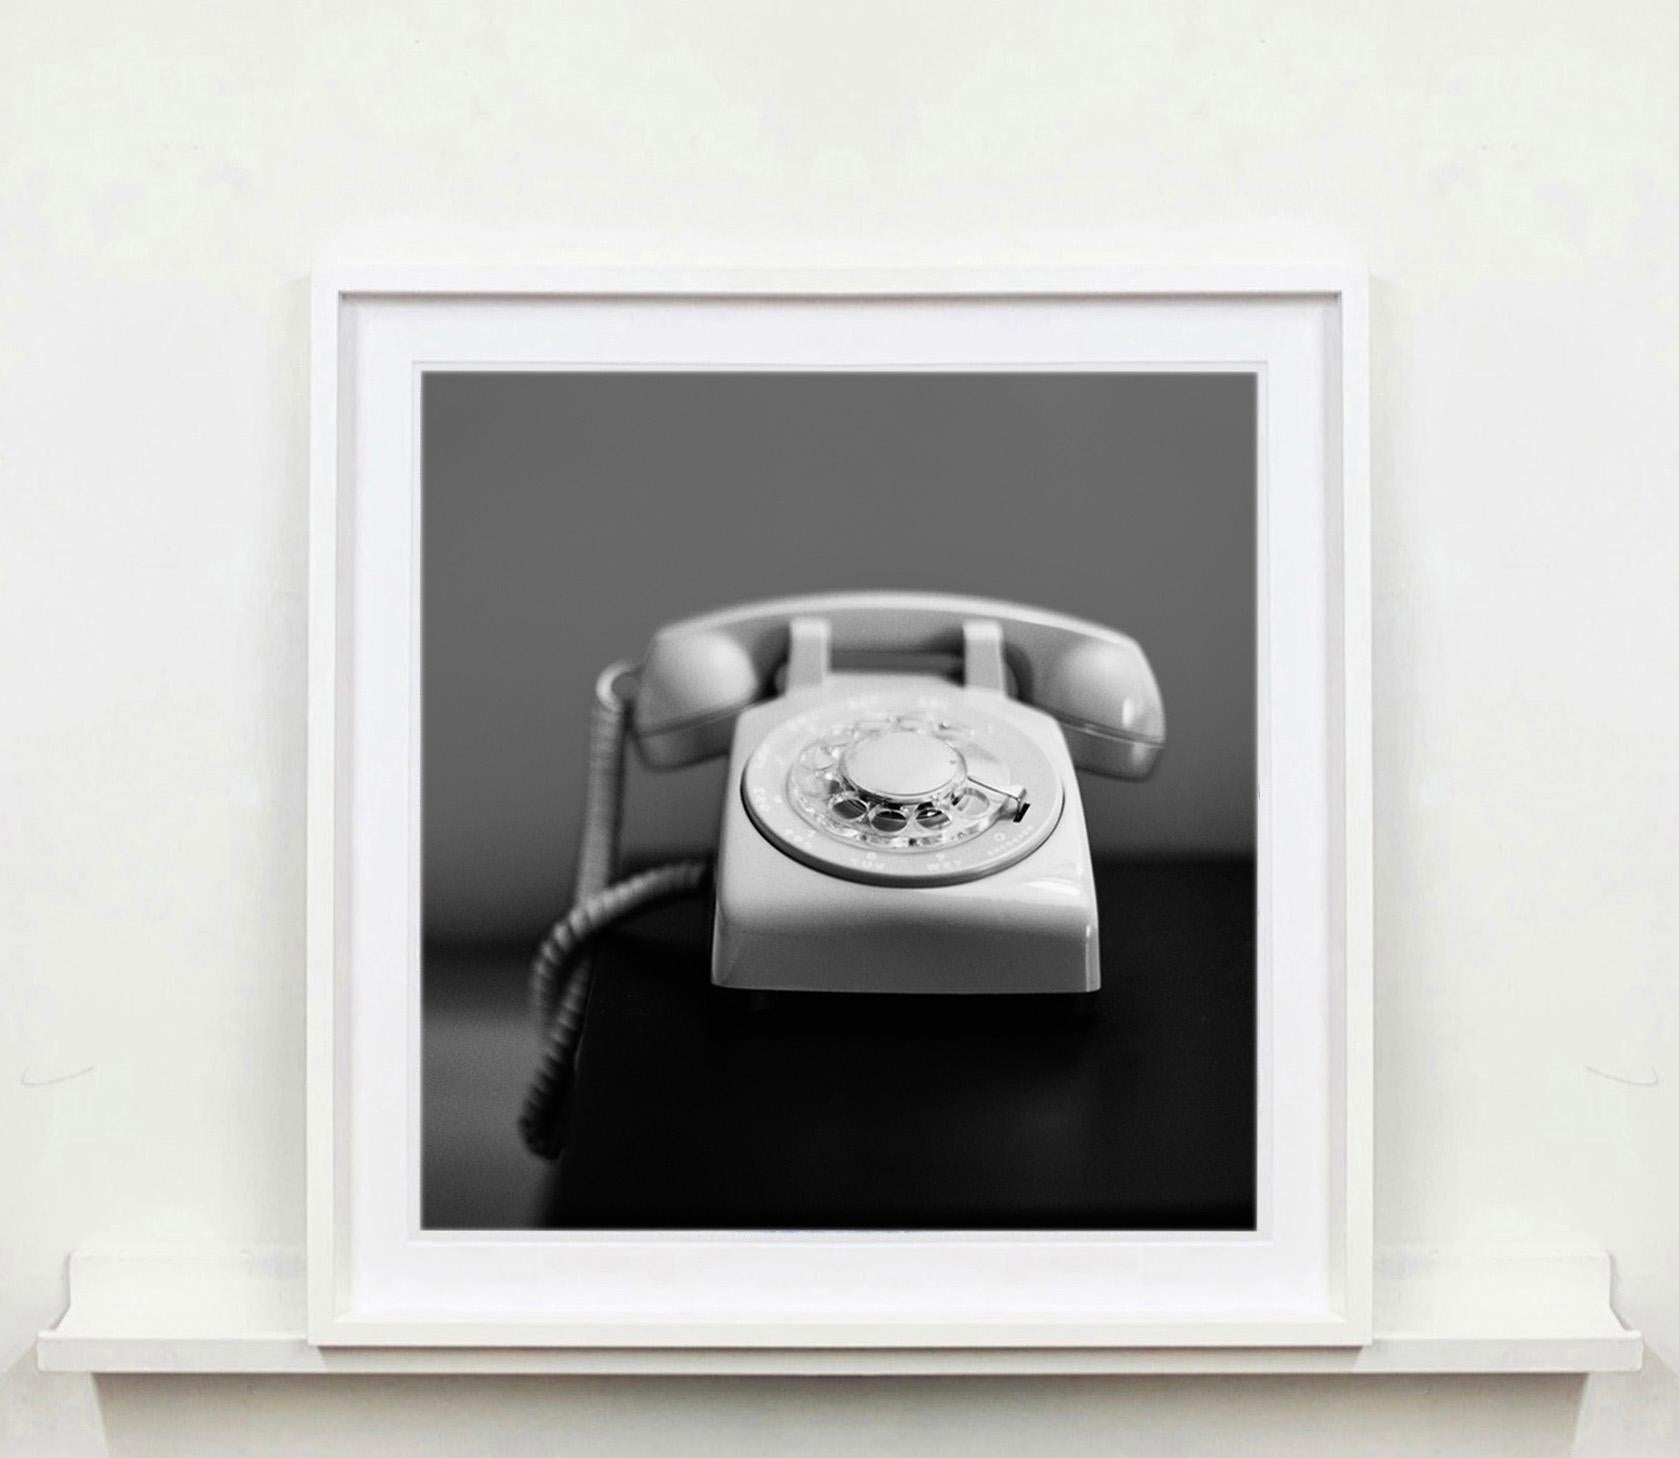 Telephone, Palm Springs, Kalifornien – amerikanische quadratische Fotografie in Schwarz-Weiß (Zeitgenössisch), Photograph, von Richard Heeps